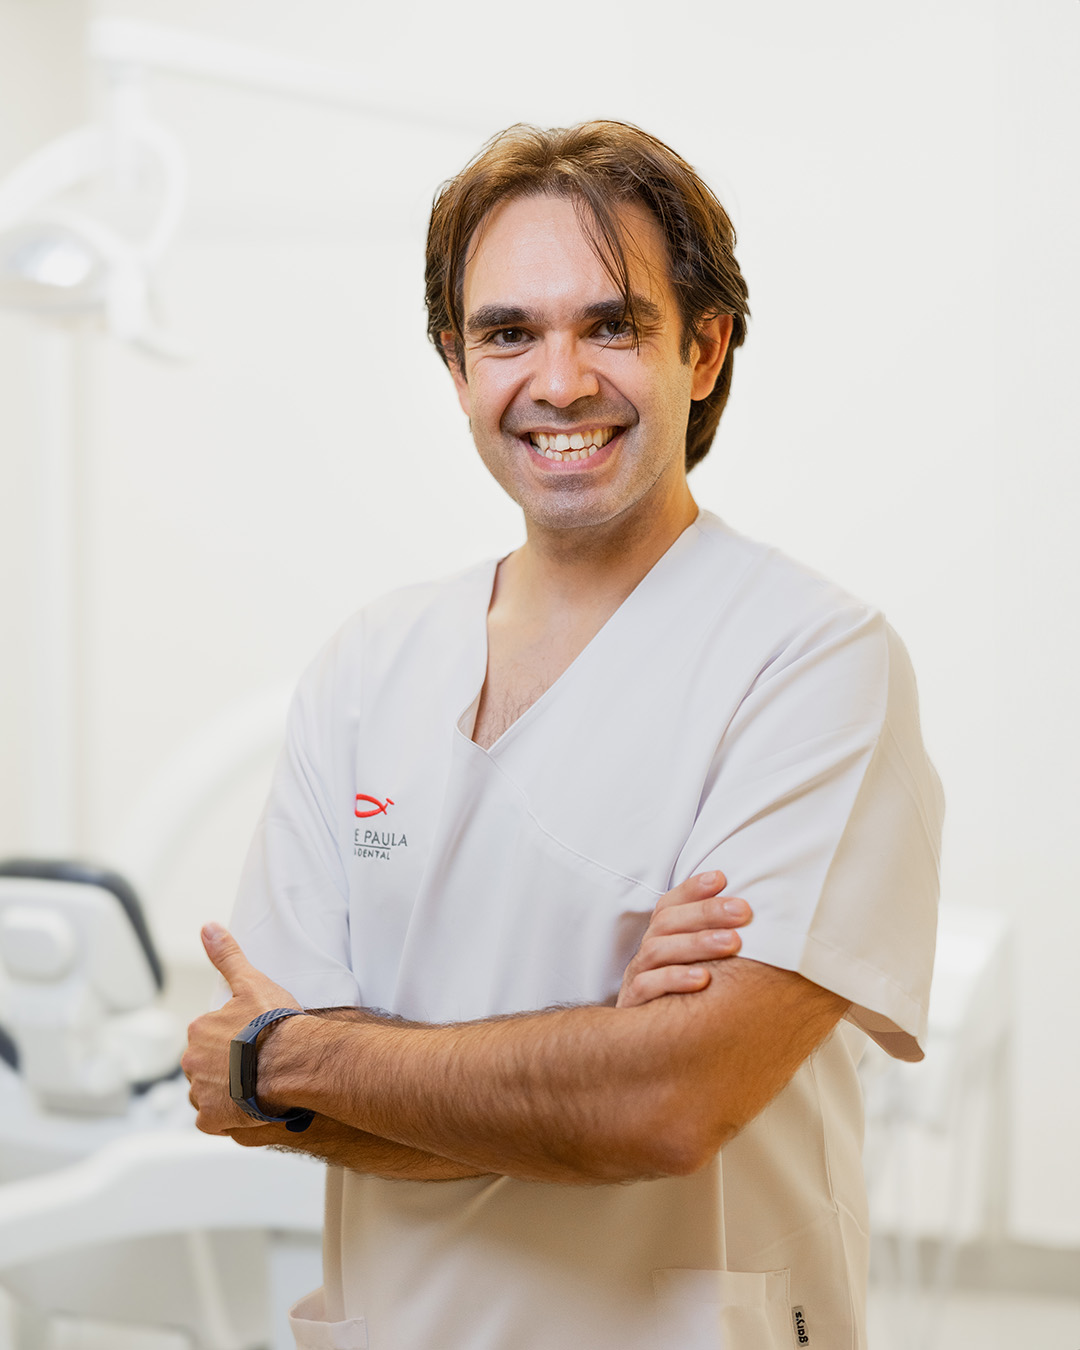 Clinica-Dental-Jose-De-Paula-9